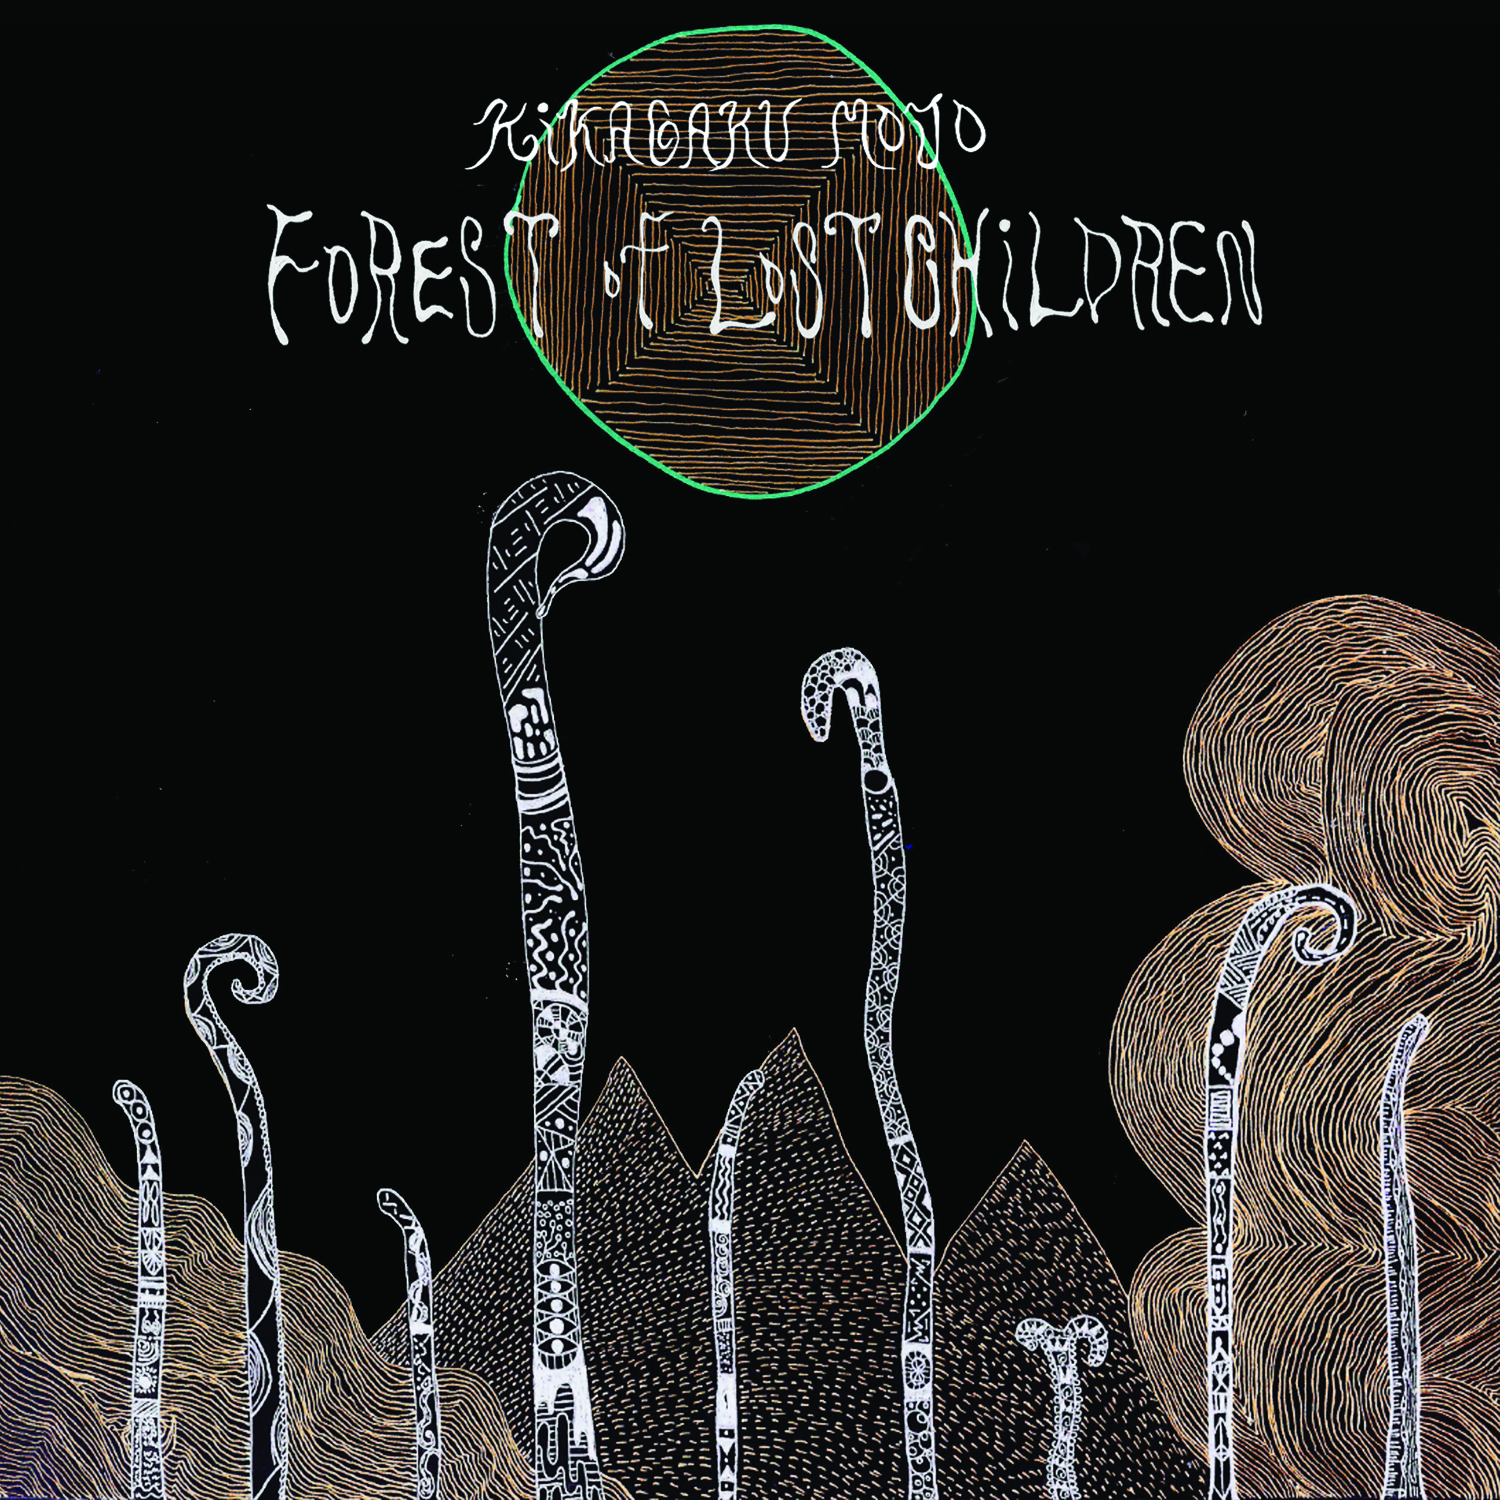 Kikagaku Moyo - Forest Of Lost Children : LP